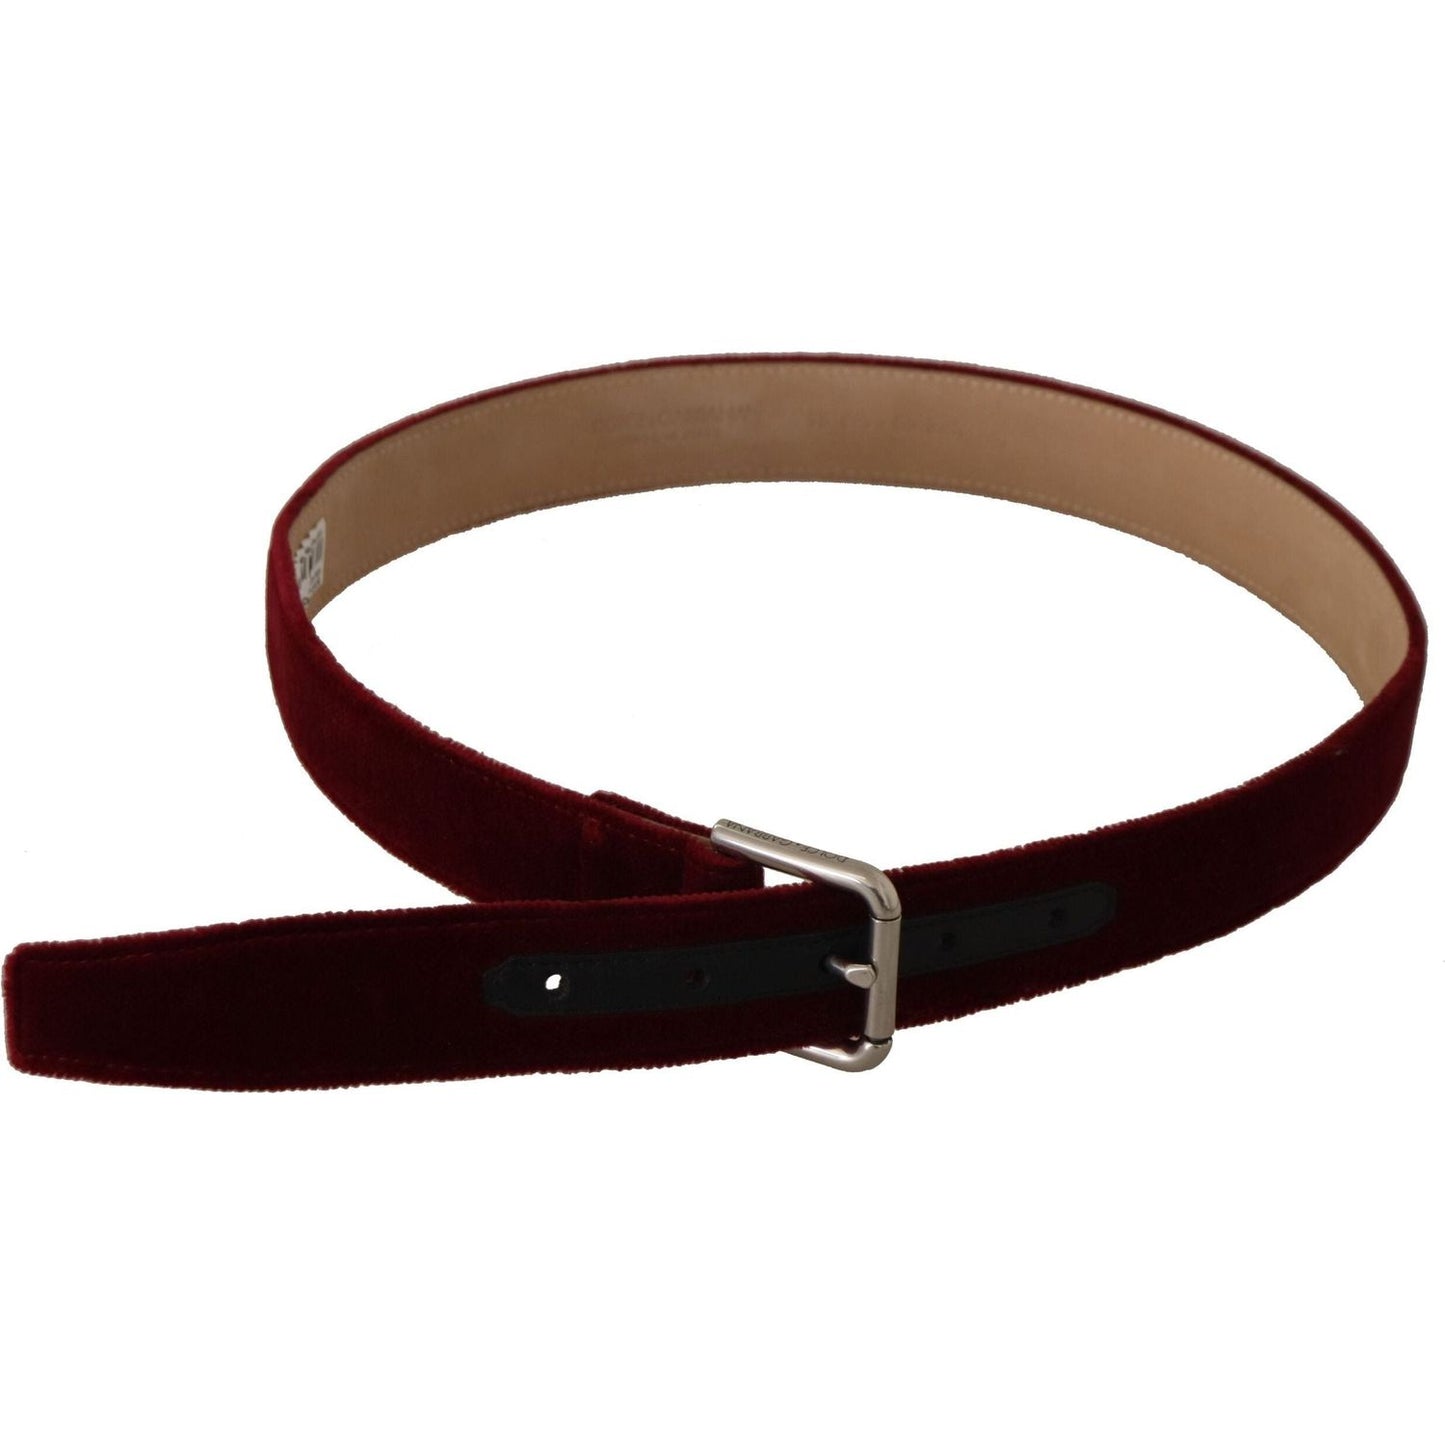 Dolce & Gabbana Elegant Velvet Logo Engraved Belt red-velvet-silver-logo-engraved-metal-buckle-belt IMG_0822-scaled-a274b998-588.jpg